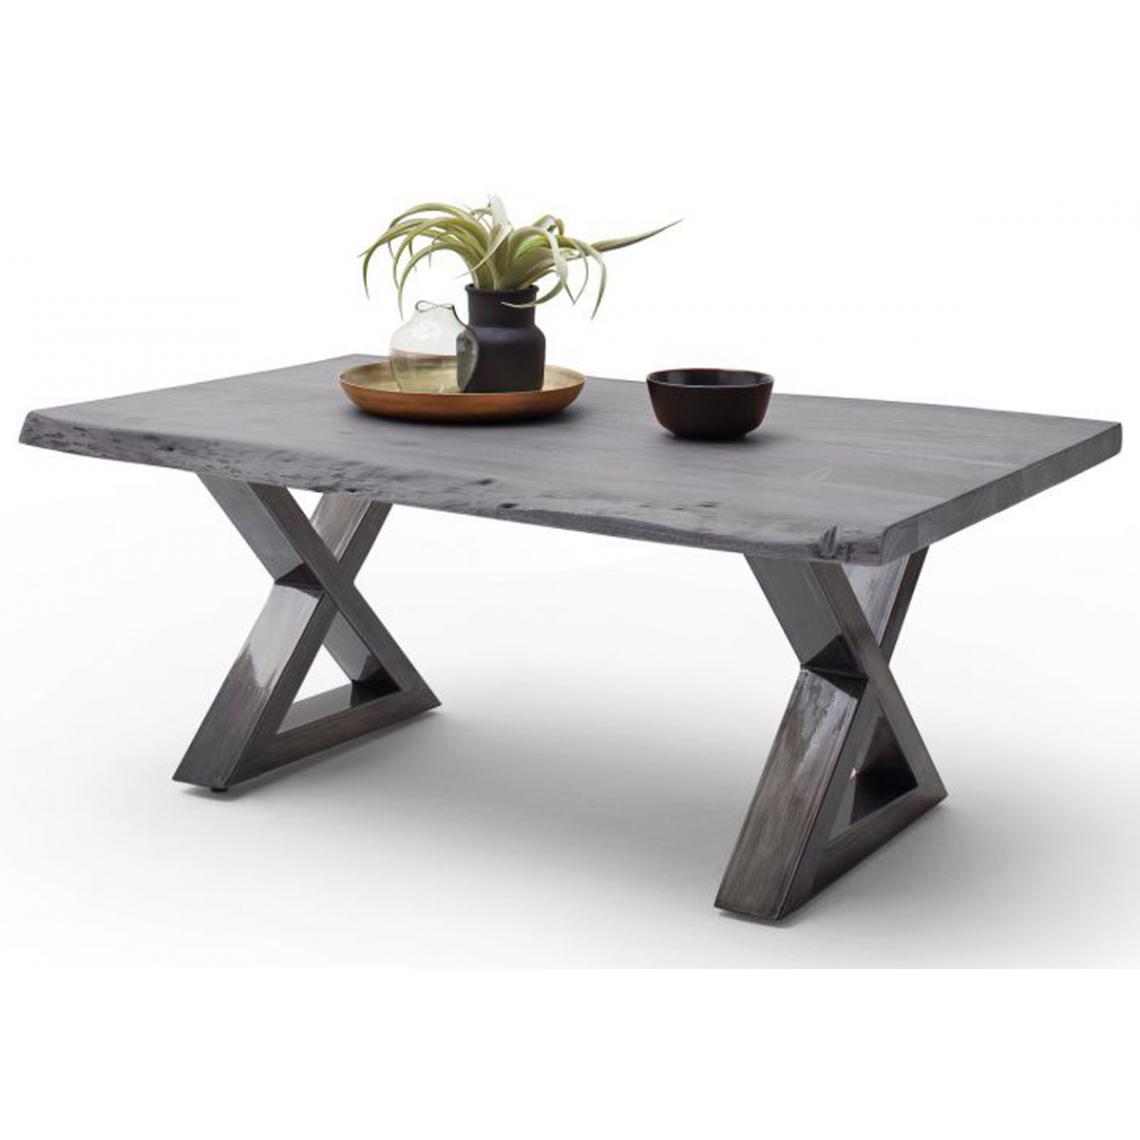 Pegane - Table basse simple en bois d'acacia massif, laqué gris/antique - L.110 x H.45 x P.70 cm - Tables basses